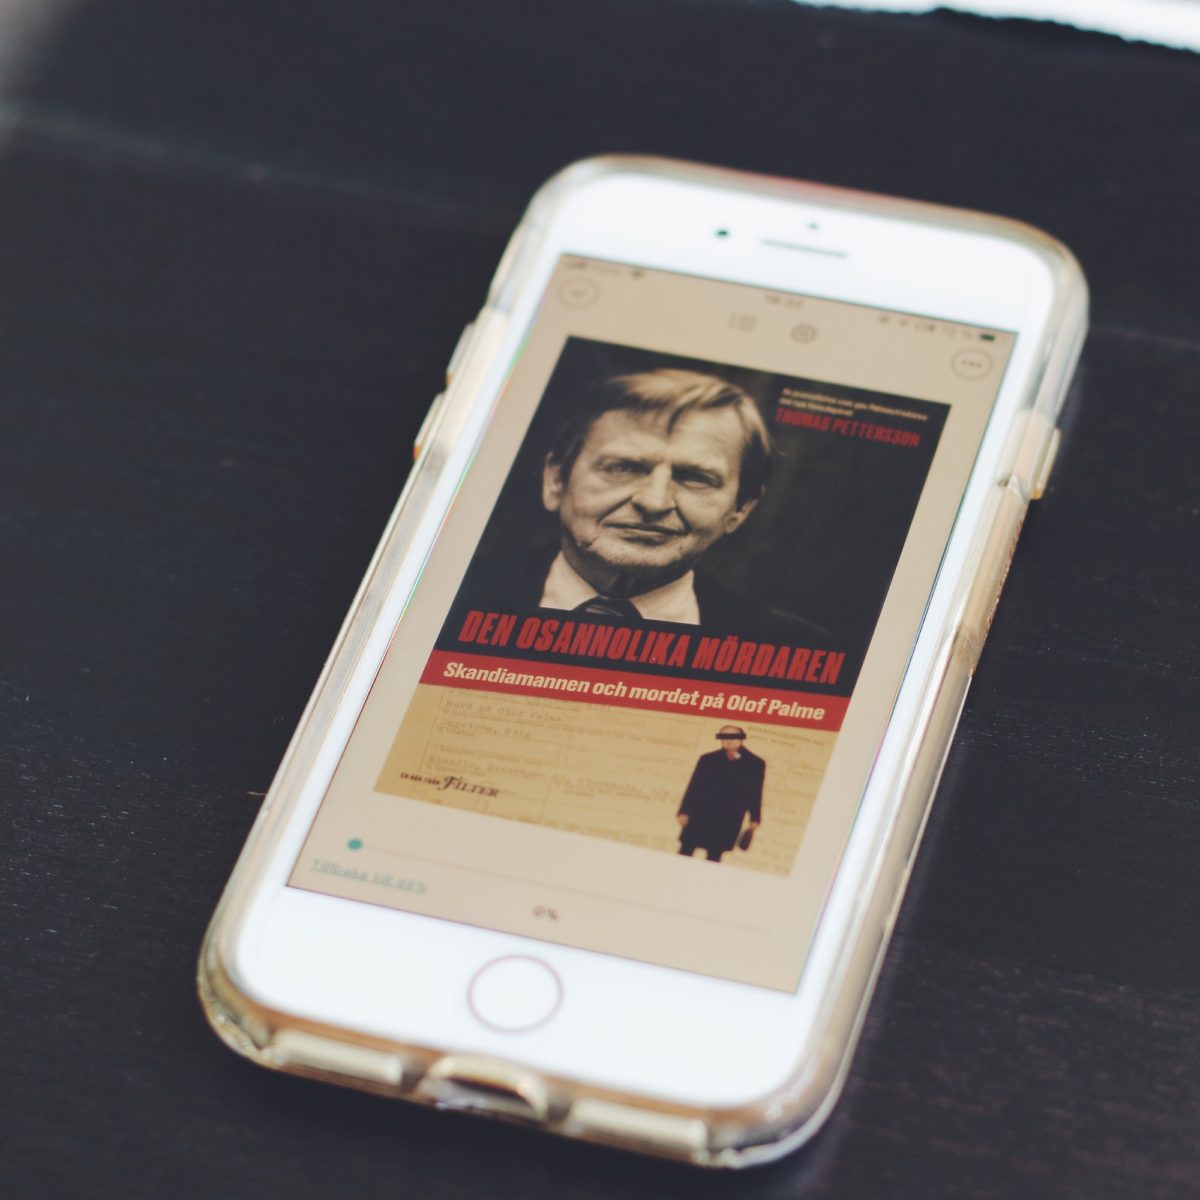 Den osannolika mördaren: Skandiamannen och mordet på Olof Palme